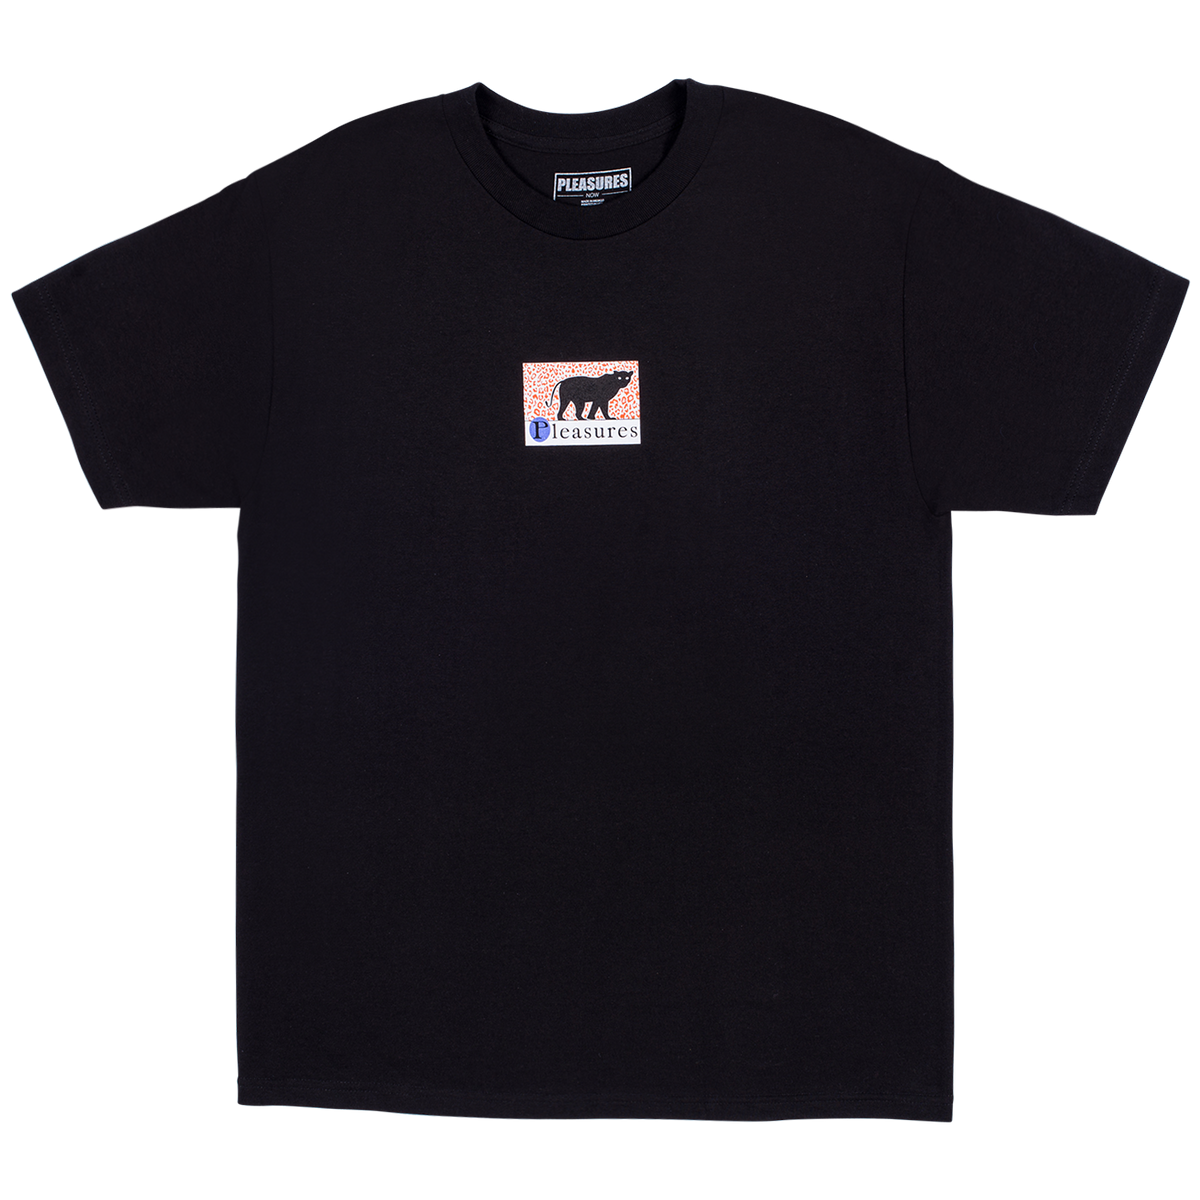 Pleasures Big Cat T-Shirt (Black)